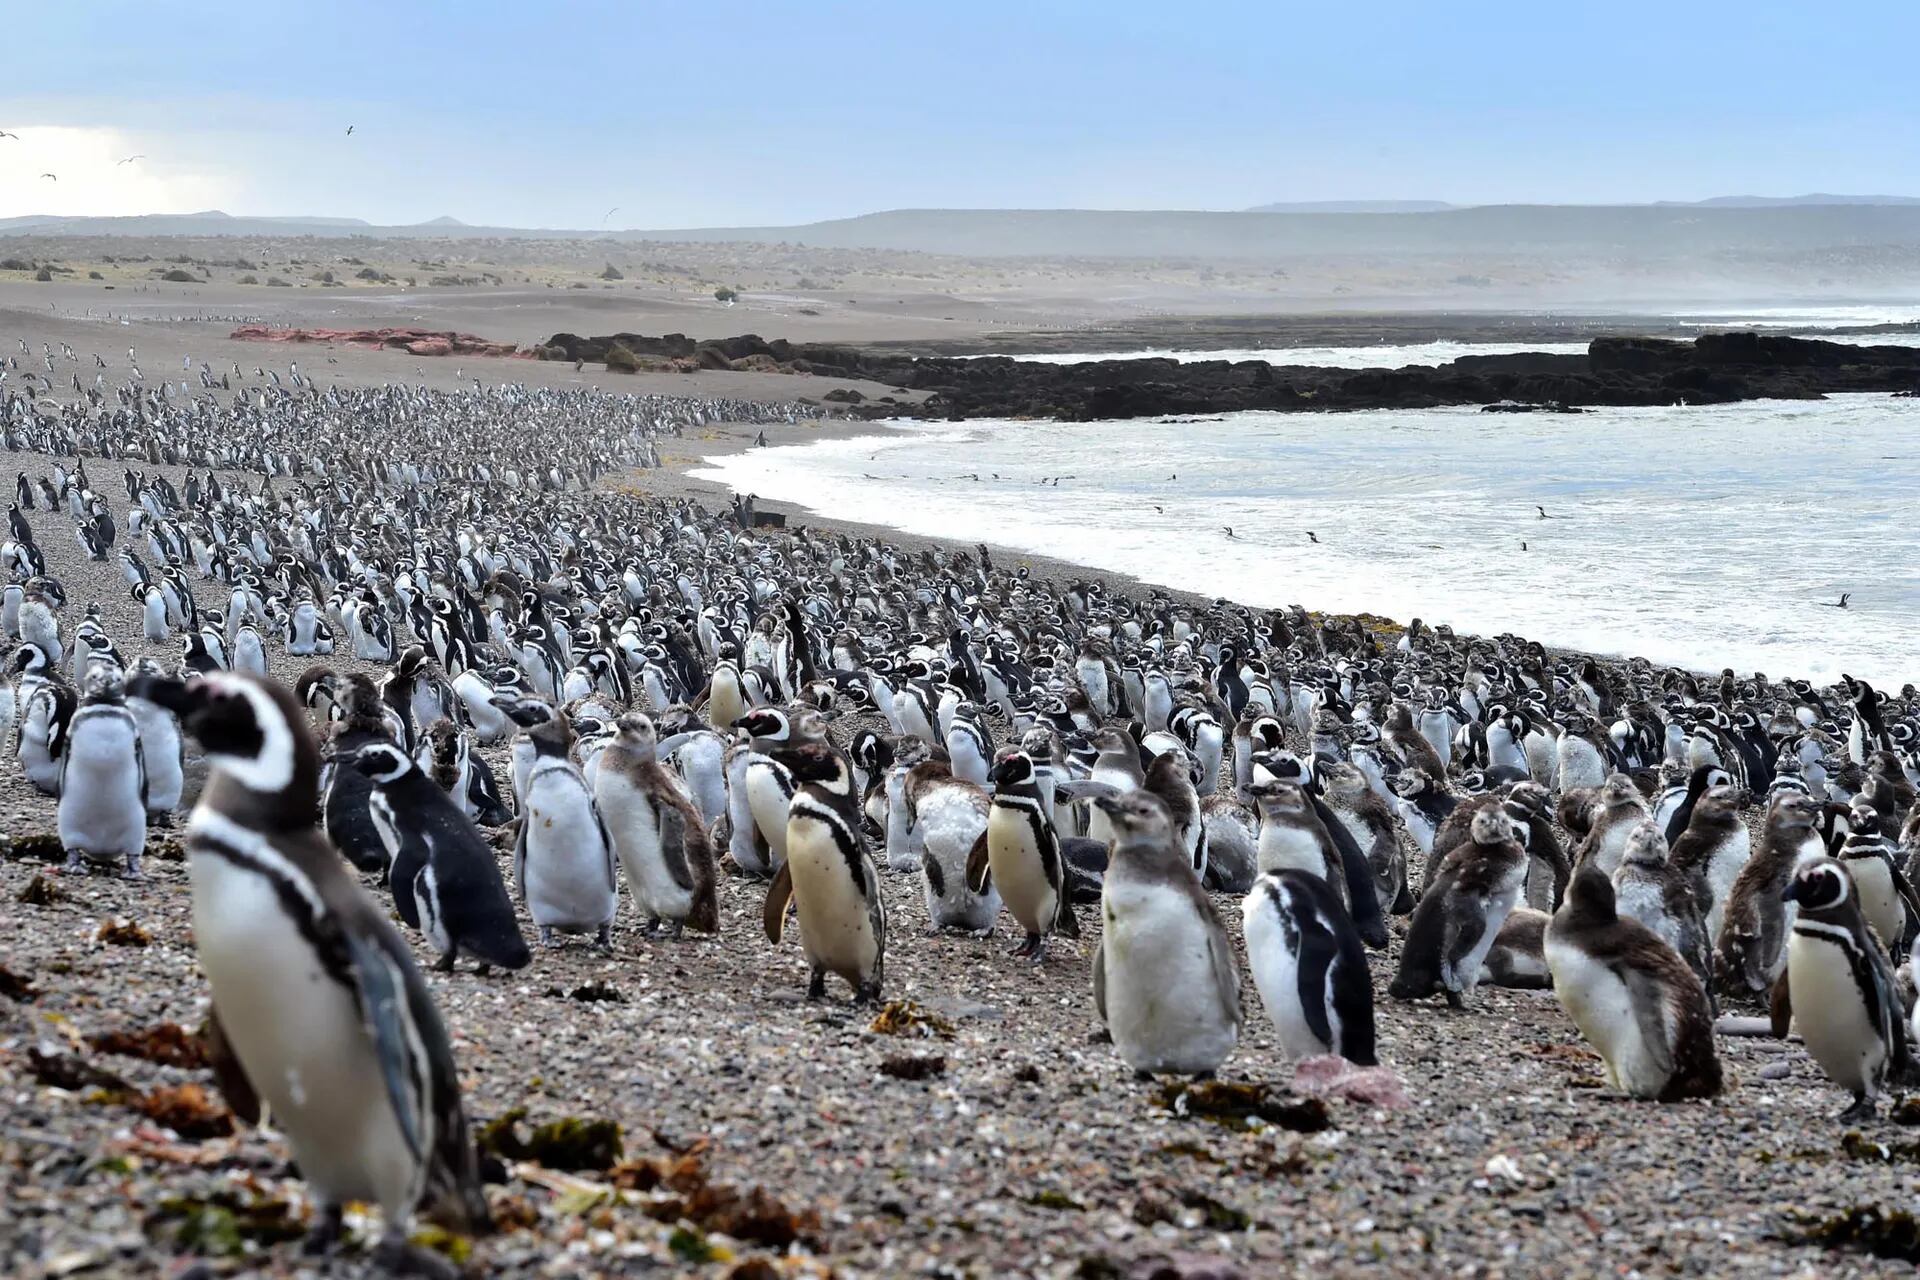 Entre septiembre y abril, más de 200.000 parejas de pingüinos de Magallanes llegan a esta reserva natural a preparar sus nidos y reproducirse.